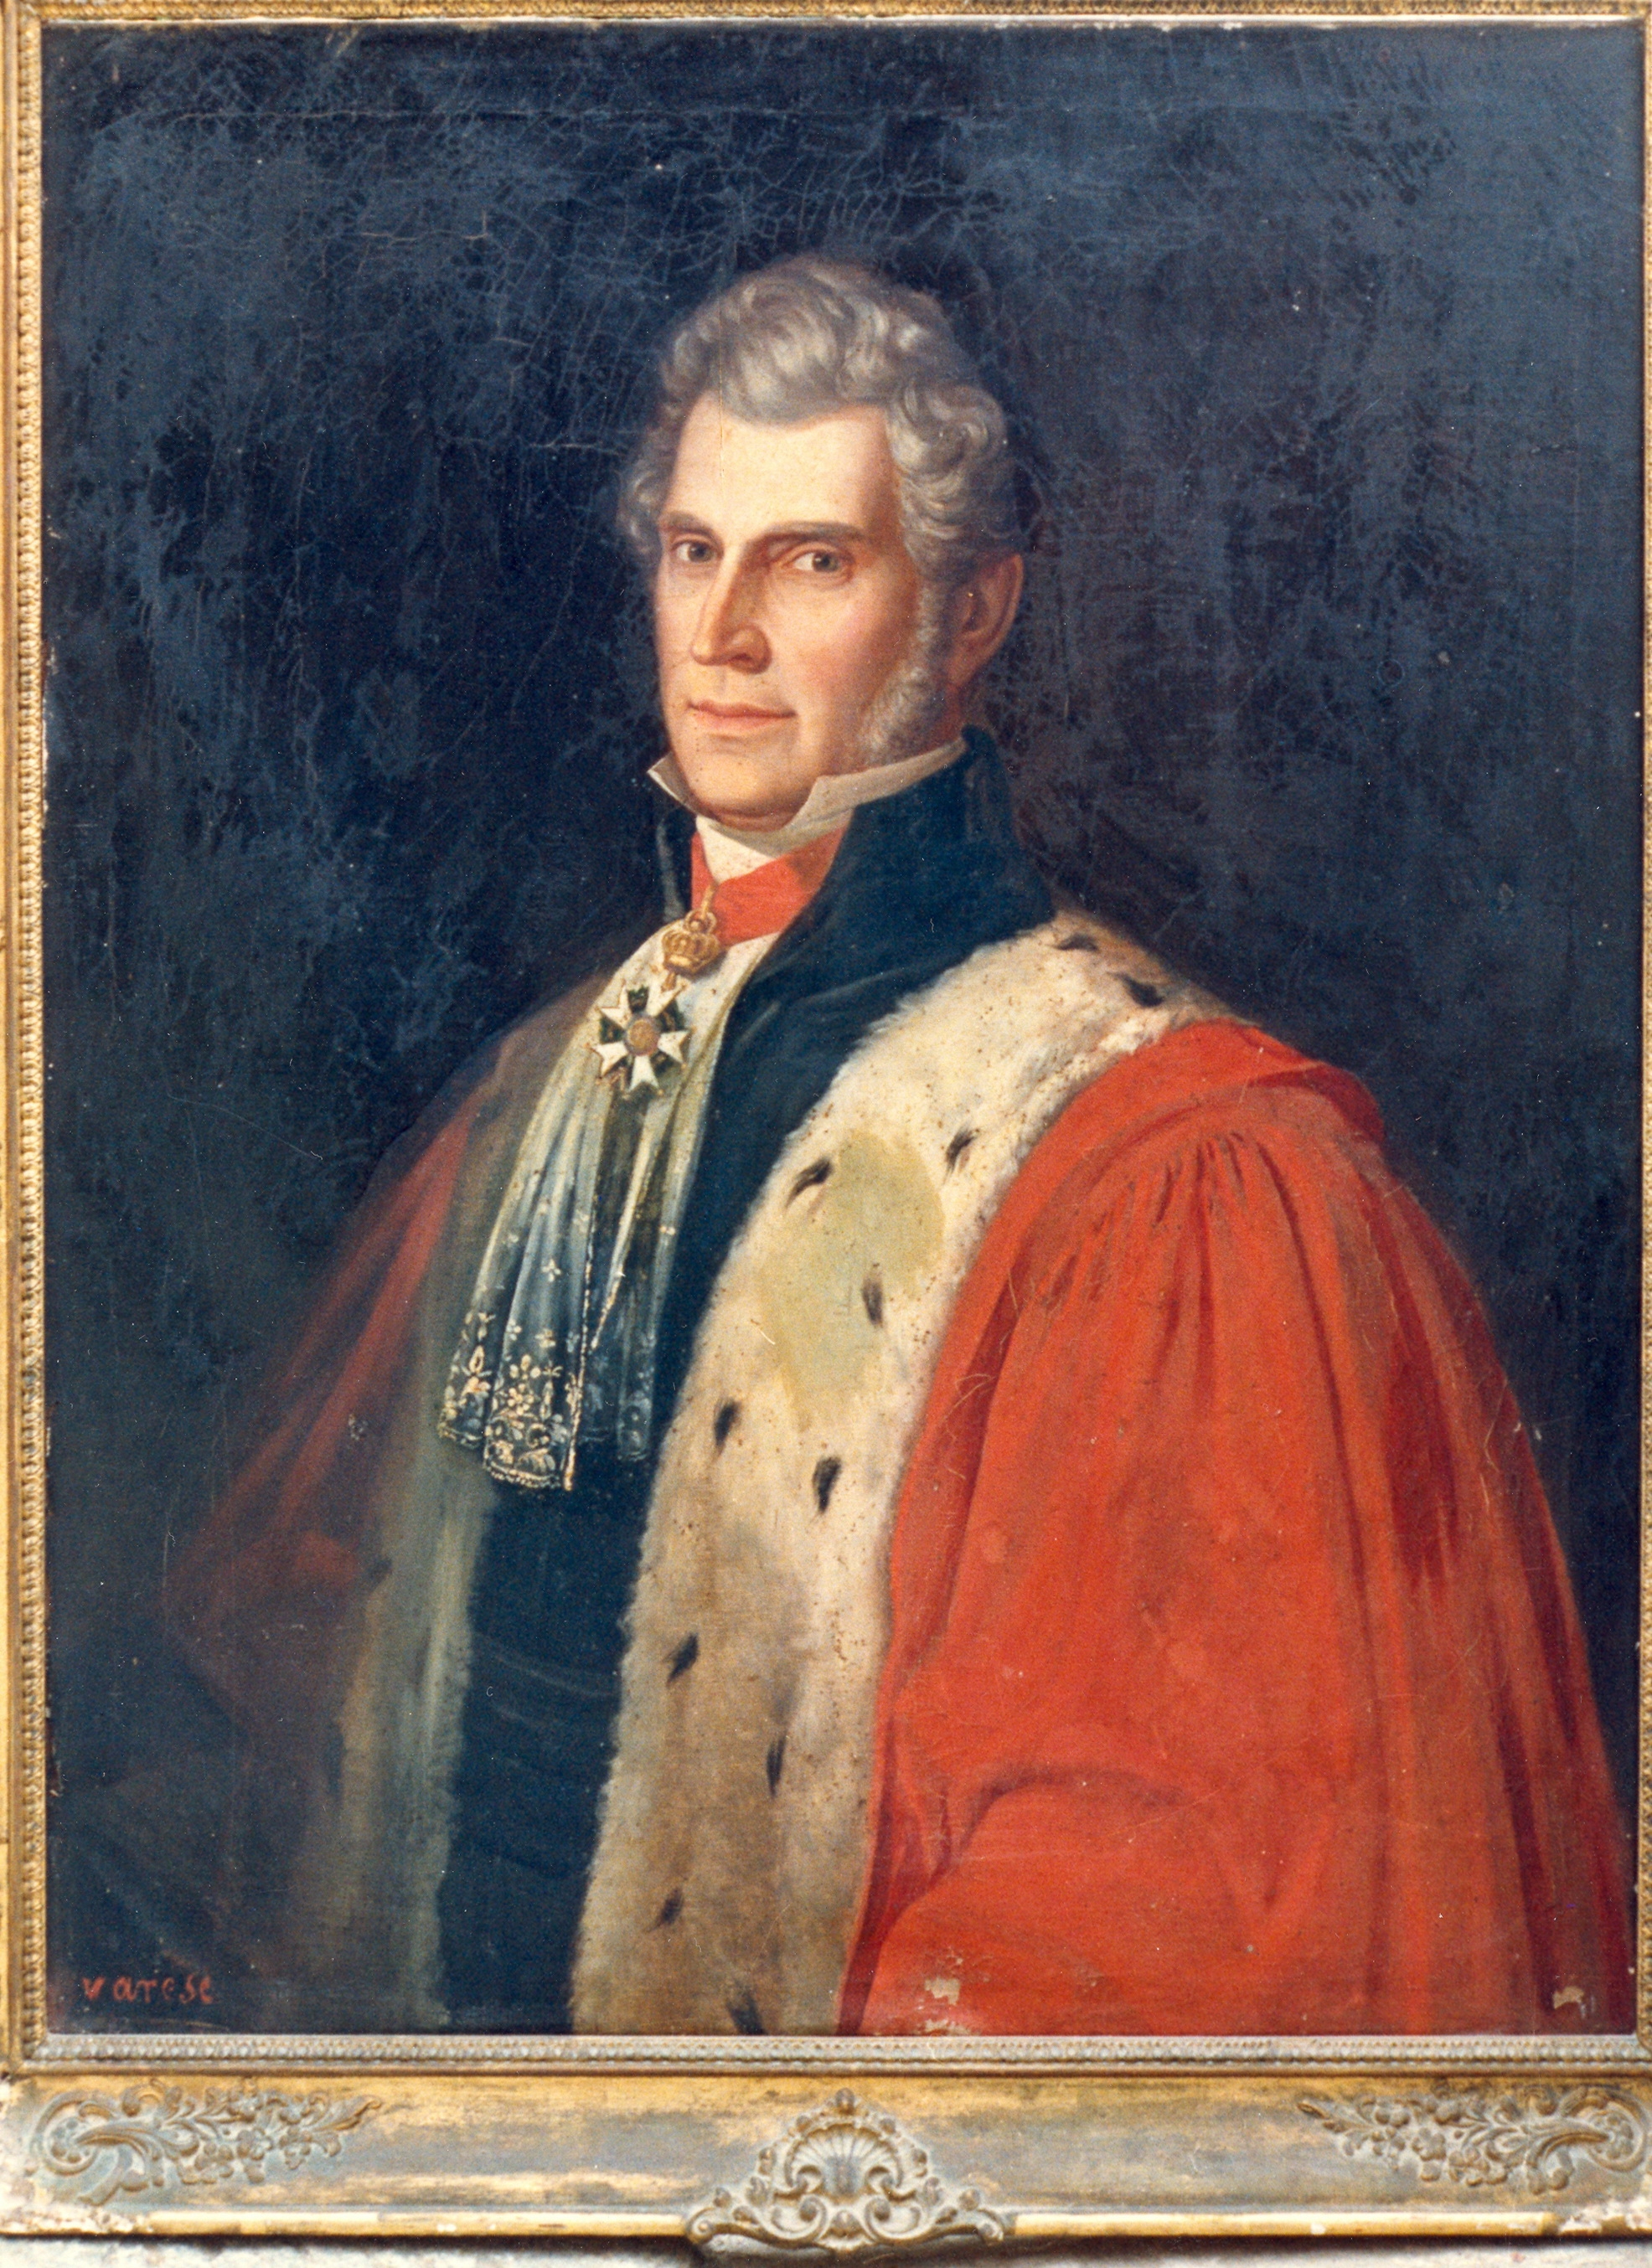 Comte Ignace Alexandre peint par Varese